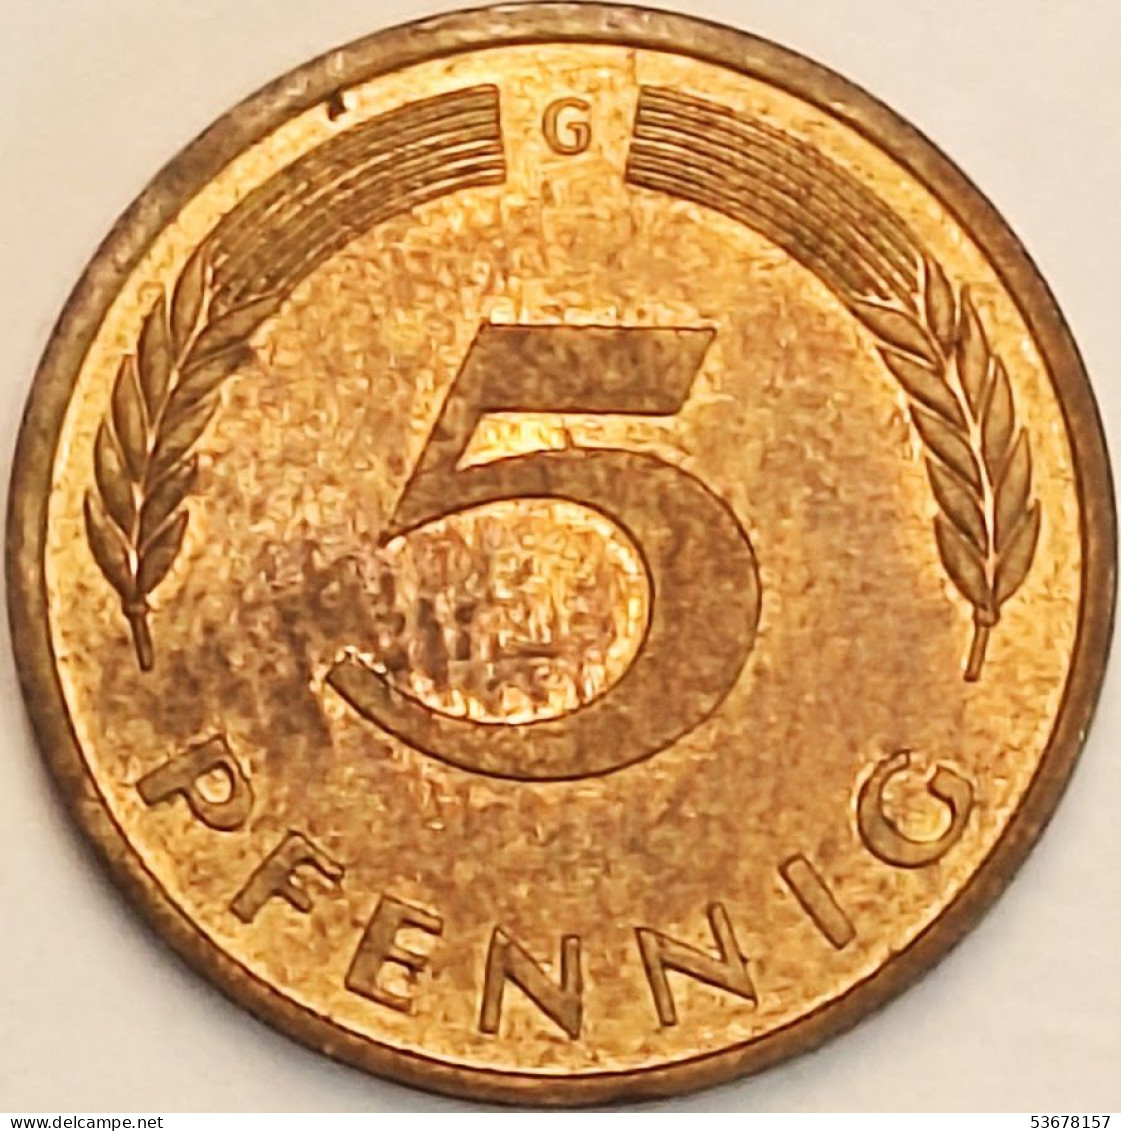 Germany Federal Republic - 5 Pfennig 1985 G, KM# 107 (#4606) - 5 Pfennig